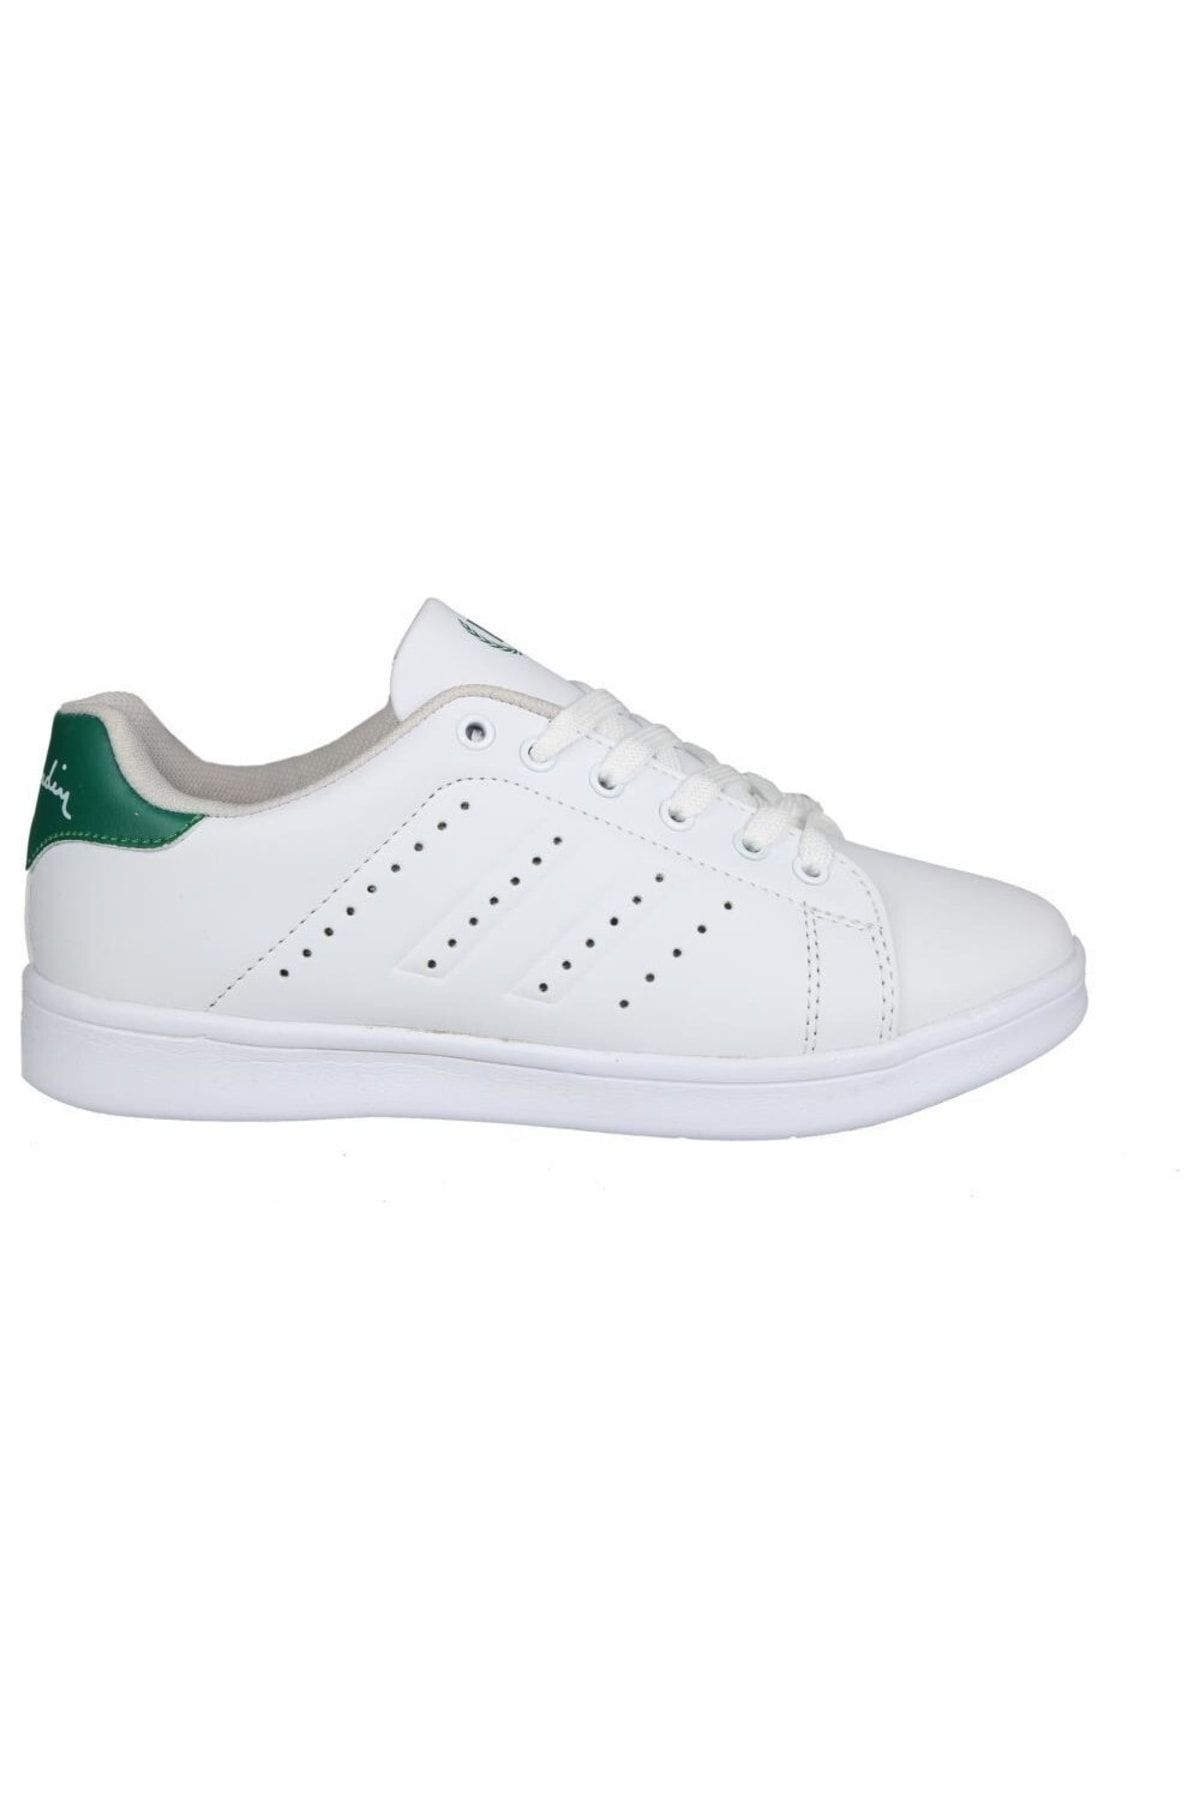 Pierre Cardin Pcs-10144 Beyaz Yeşil Unisex Sneakers